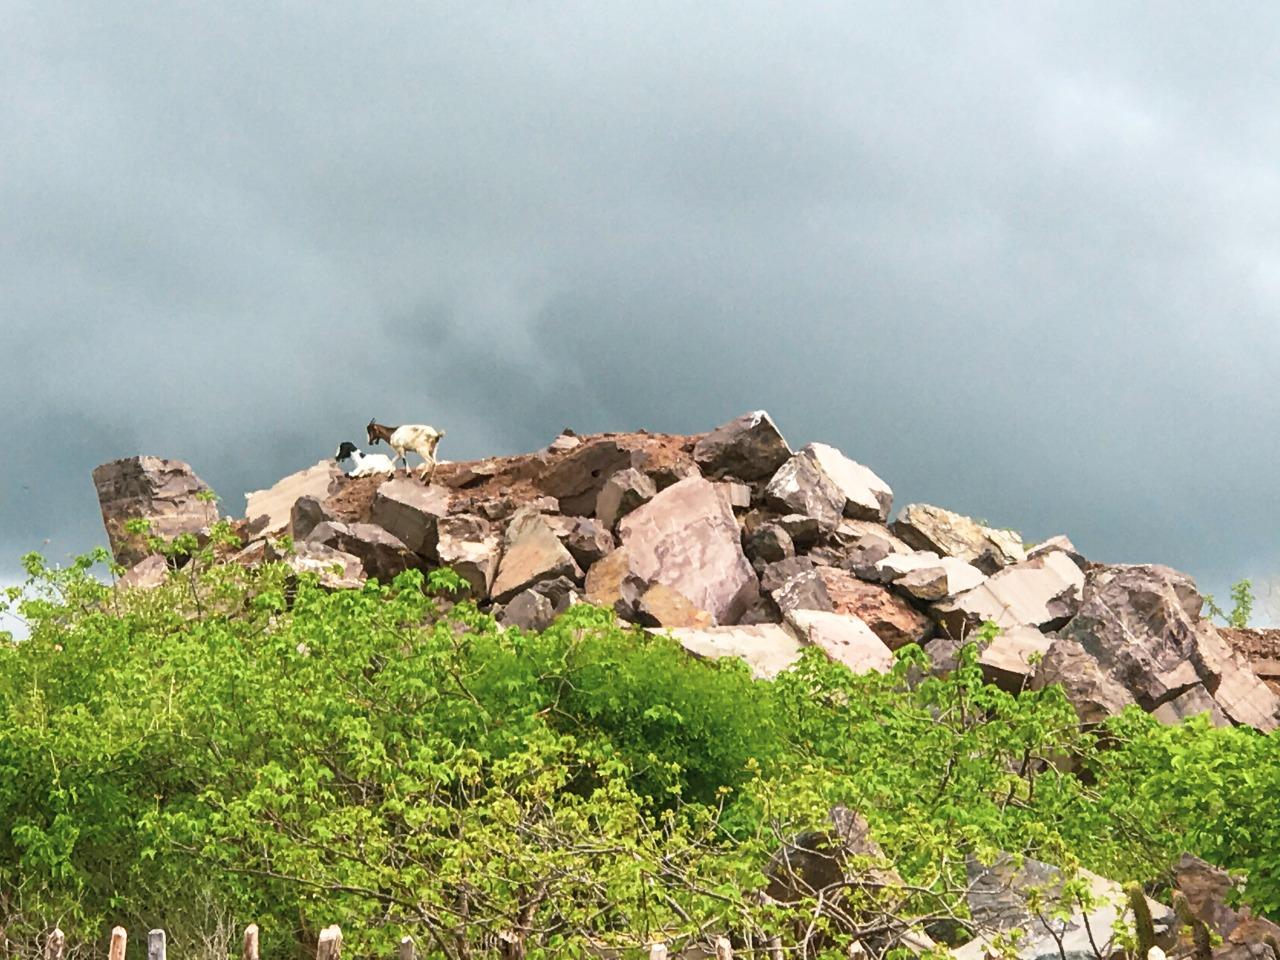 Uma nuvem “carregada” em cima de um morro de pedras gigantes e arredondadas